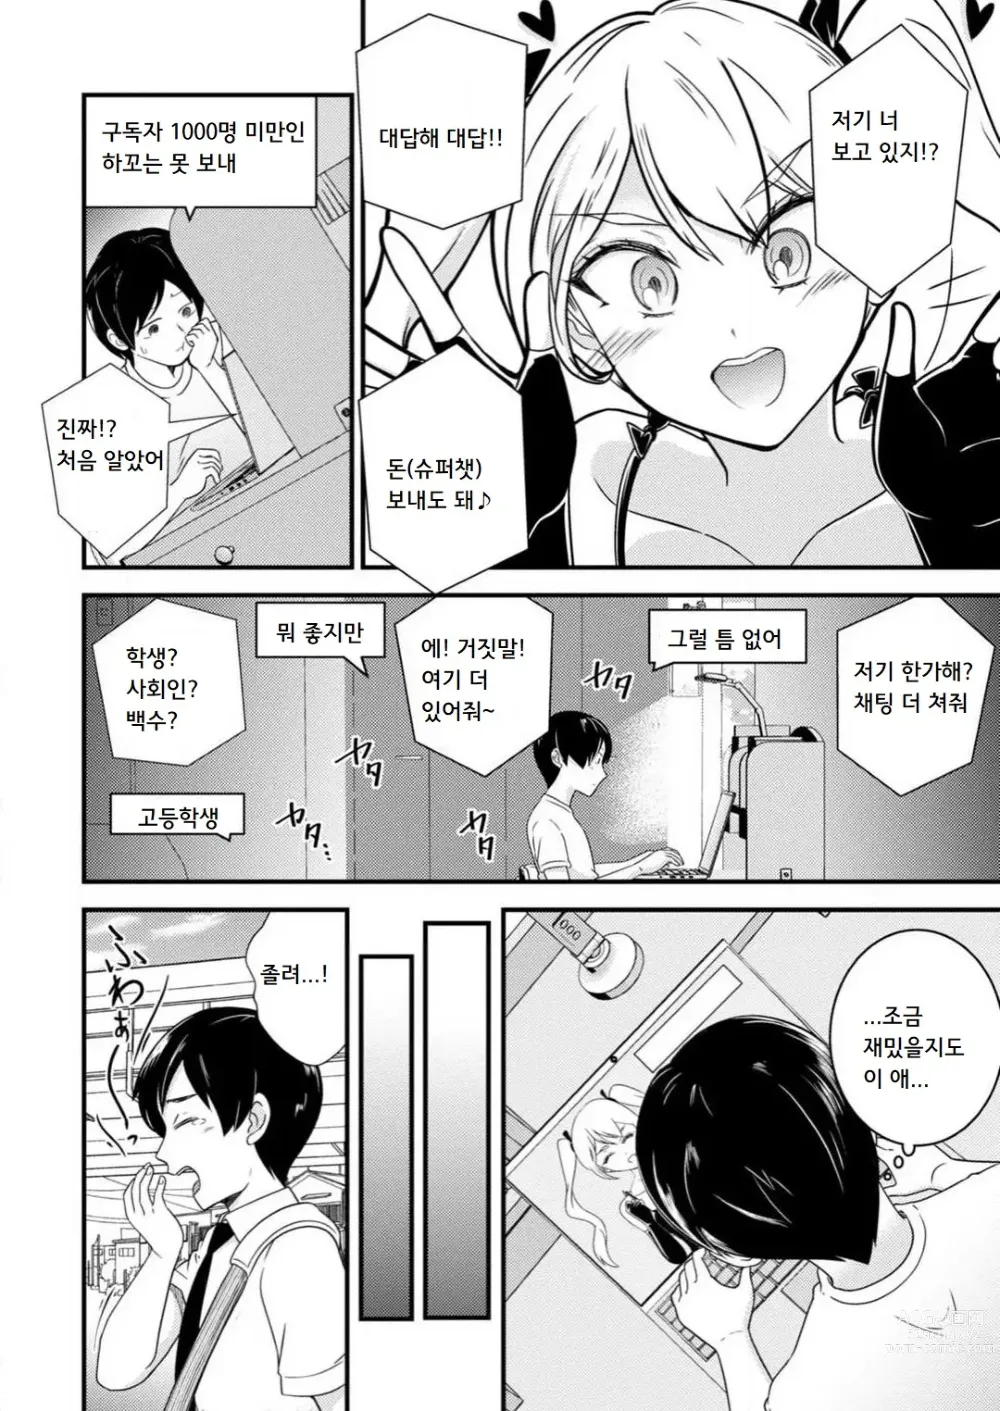 Page 7 of manga 암컷타락한 나의 동정헌팅 일기 ~전 남자인 내가 암컷 구멍에 자지를 기뻐하며 삽입될 때까지~